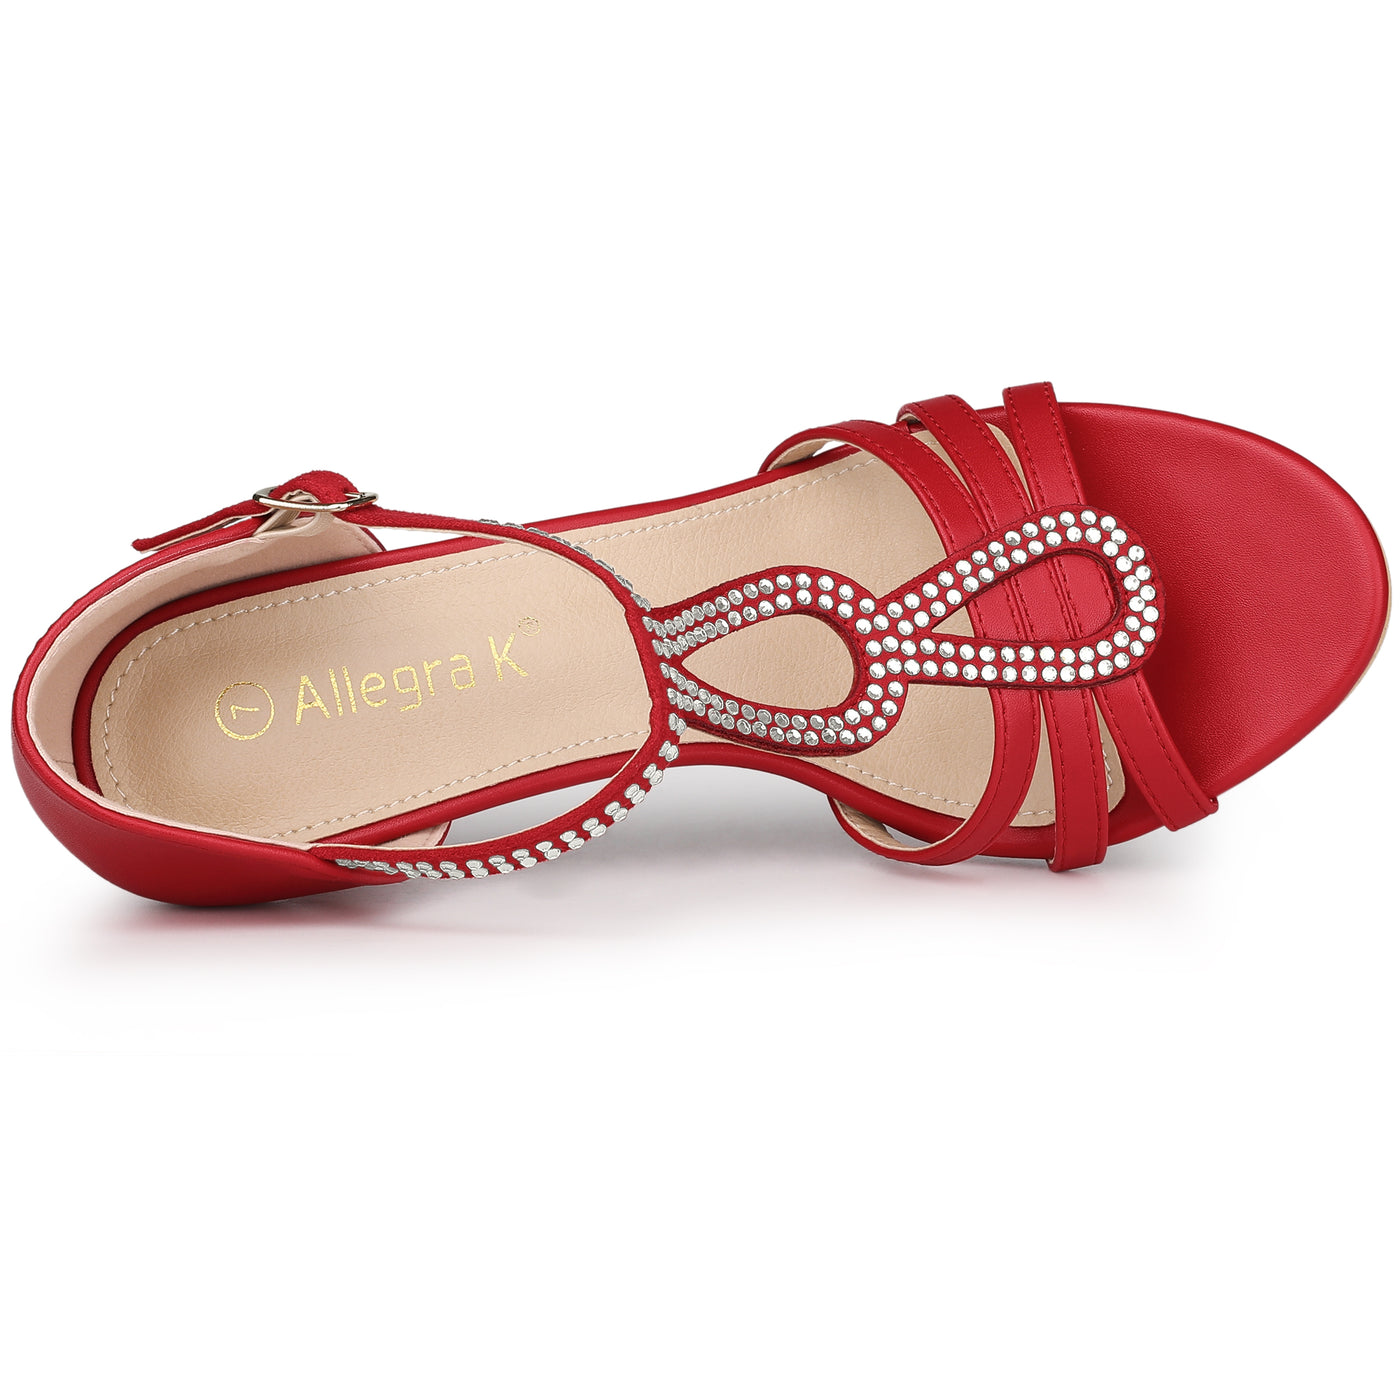 Allegra K Women's Rhinestone Ankle Strap Open Toe Stiletto Heels Sandals